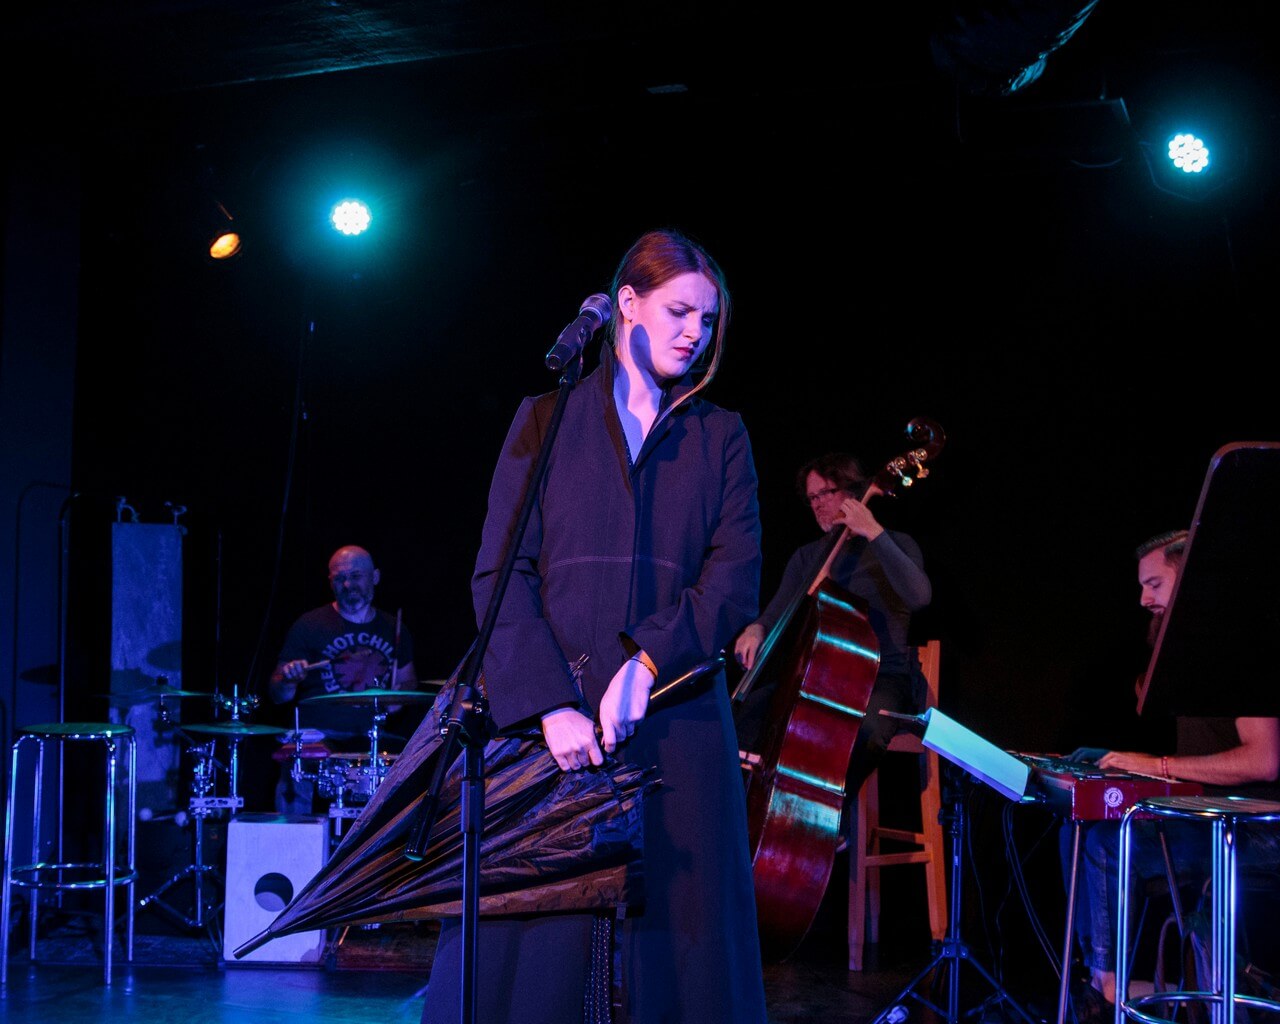 kobieta ubrana w czarną sukienkę stoi na środku, ma zamknięte oczy, zwrócona jest w prawo, w dłoniach trzyma złożony czarny parasol, przed nią stoi mikrofon na statywie, w tle po lewej mężczyzna grający na perkusji, obok mężczyzna grający na kontrabasie, po prawej stronie mężczyzna grający na keyboardzie, ciemne tło, pada niebieskie światło